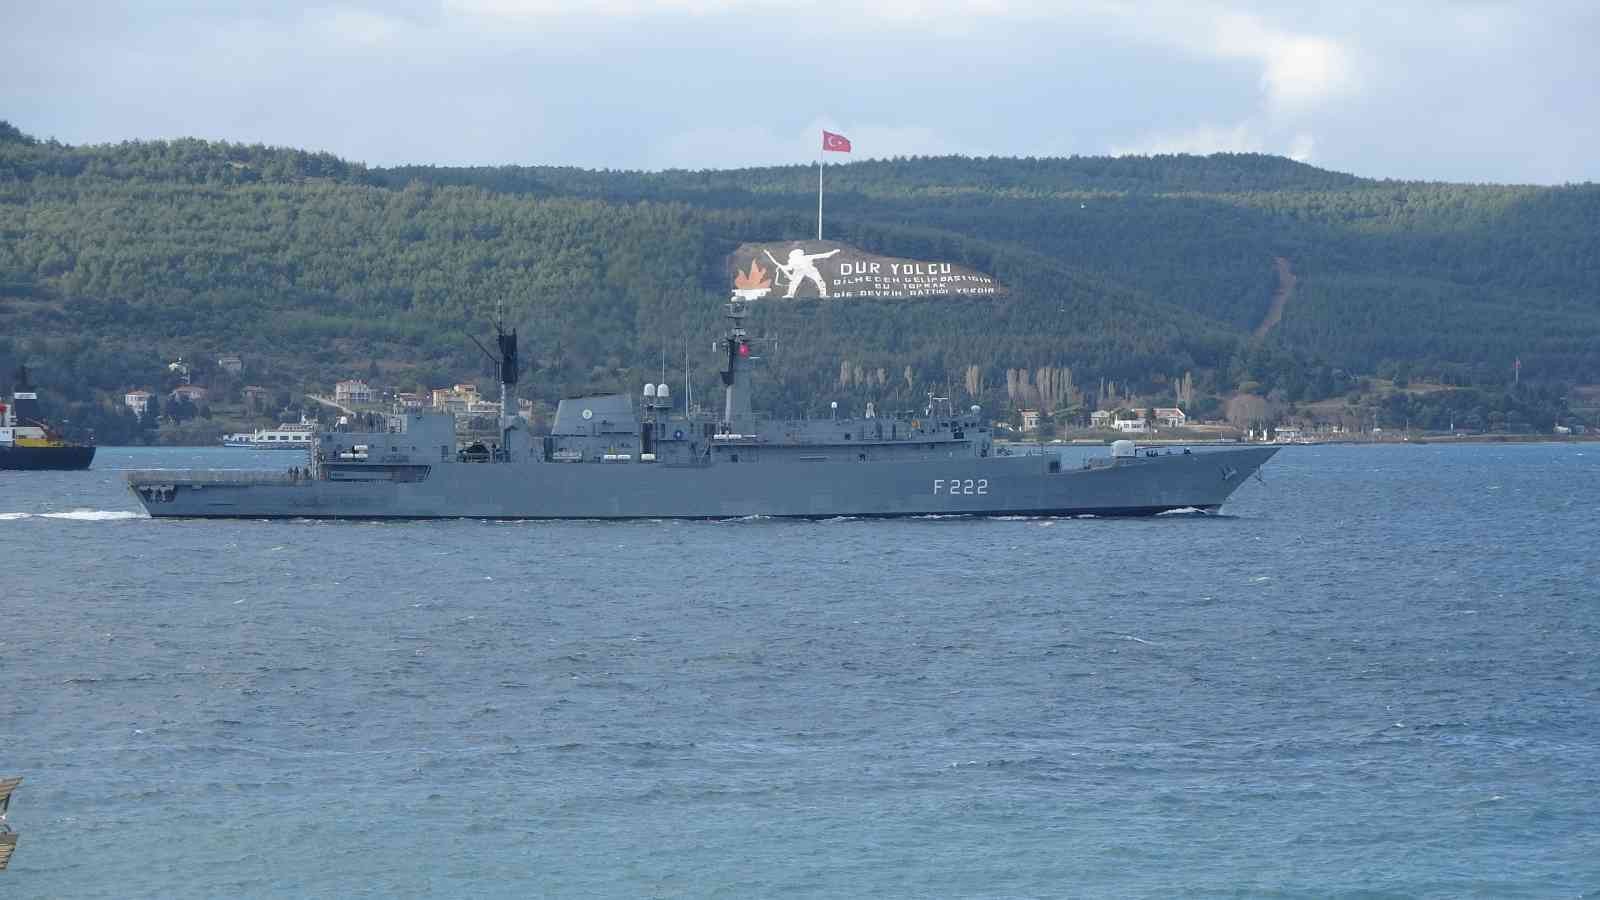 Romanya savaş gemisi Çanakkale Boğazı’ndan geçti #canakkale